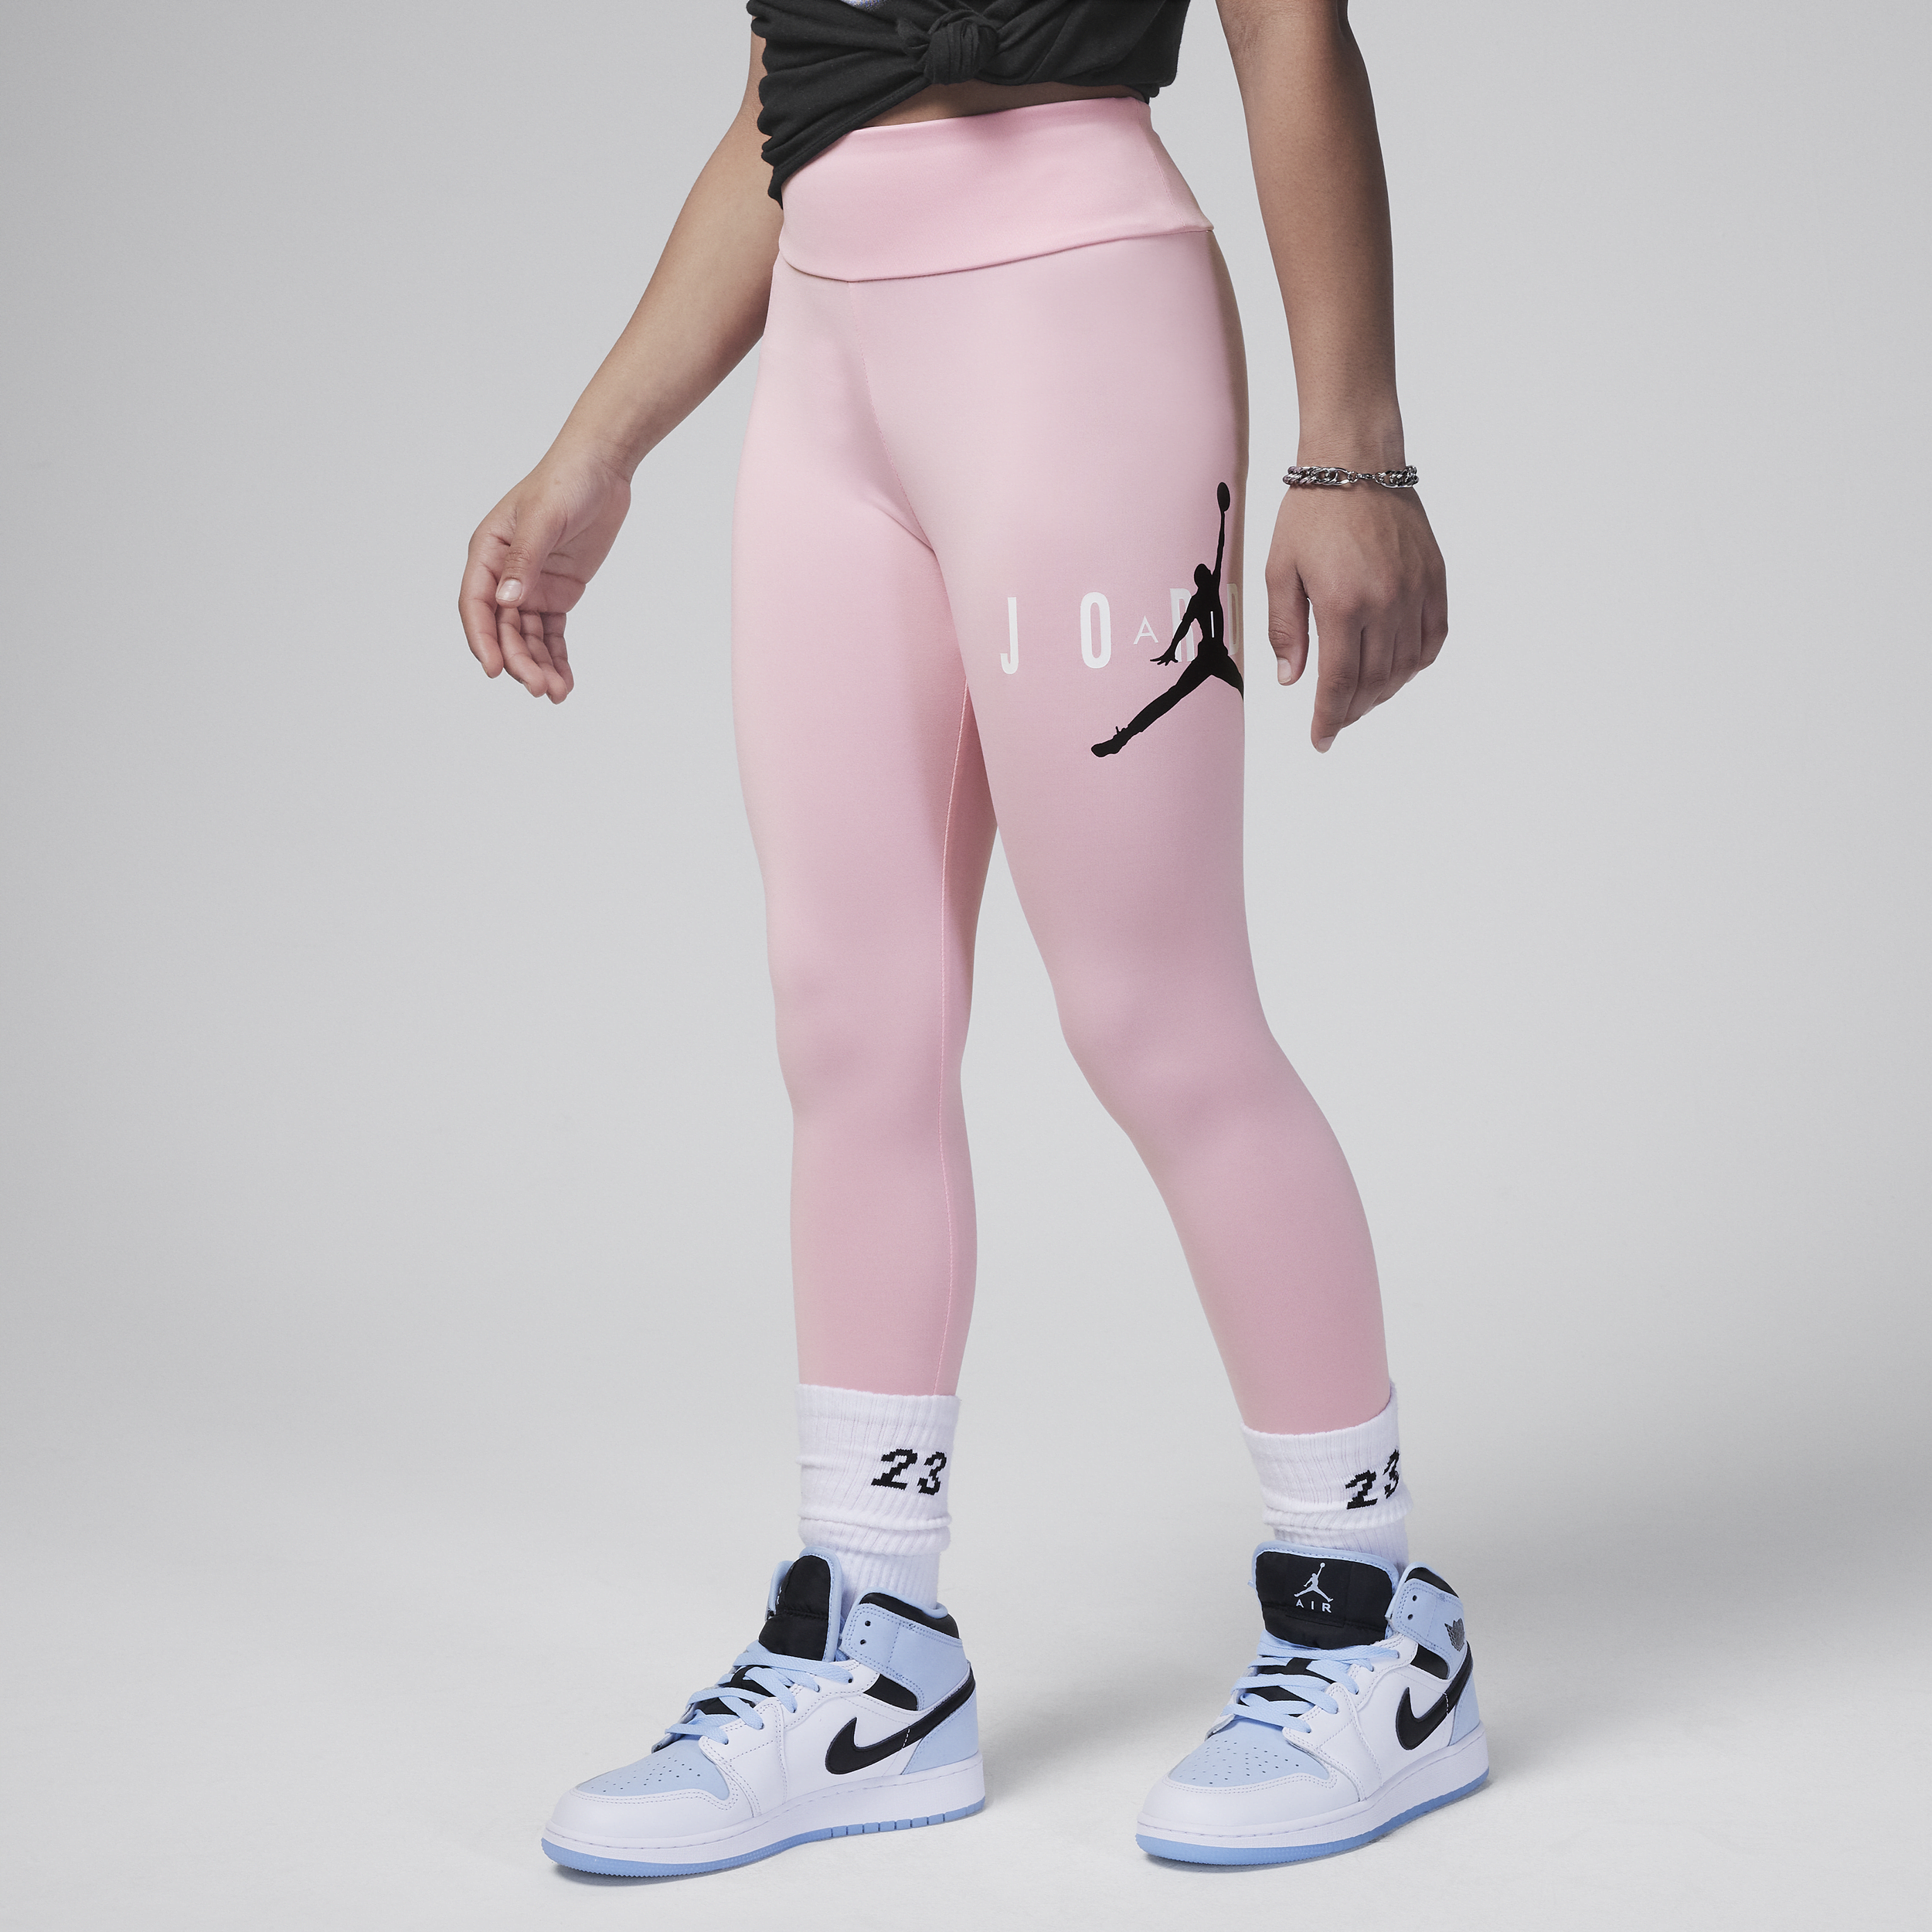 Nike Leggings sostenibili Jumpman Jordan – Ragazzo/a - Rosa